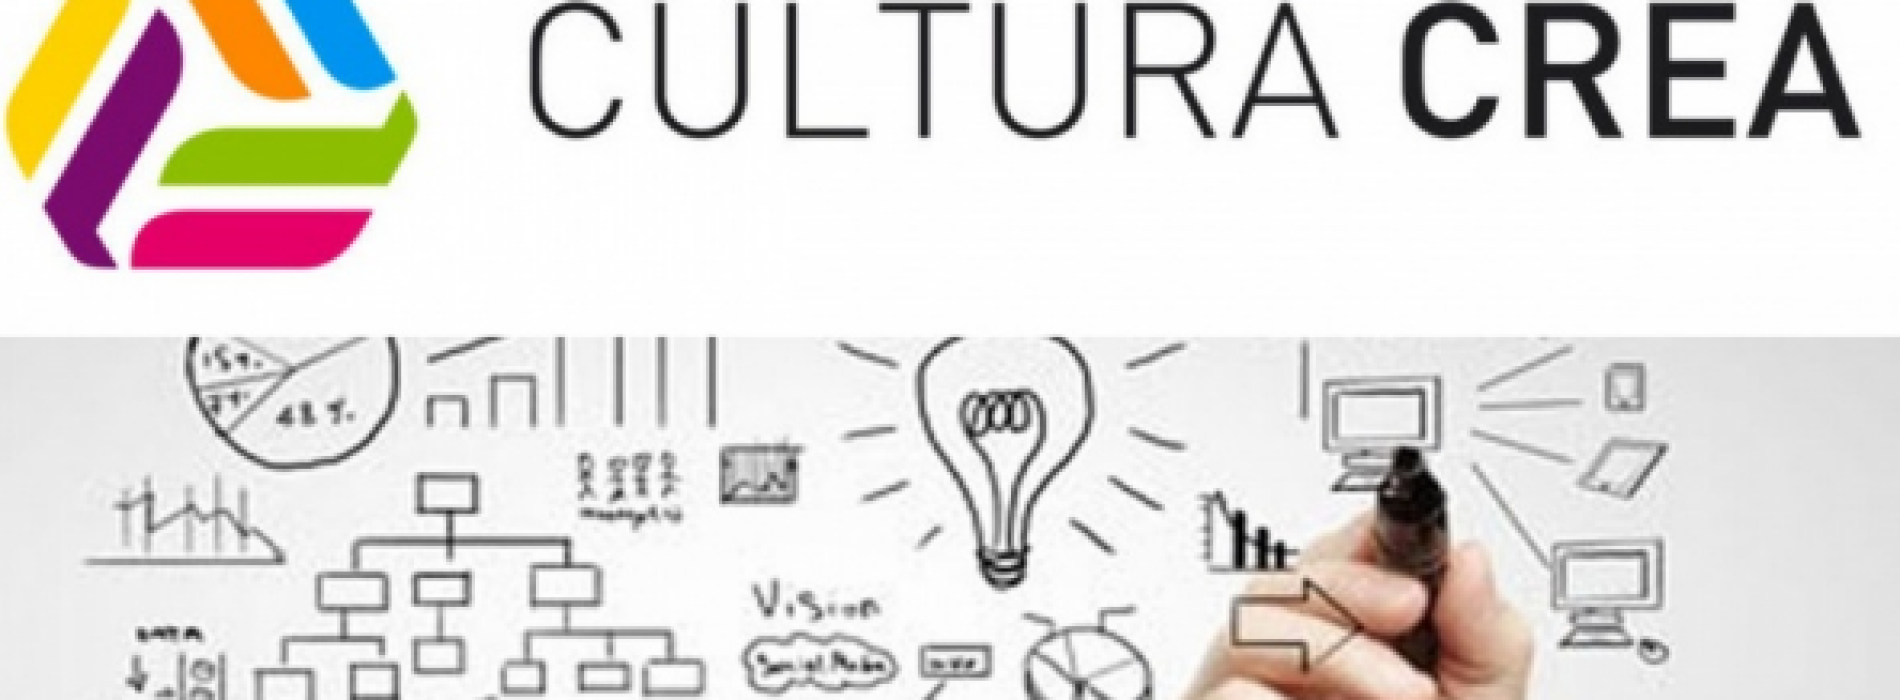 Cultura Crea. Al via le domande di finanziamento